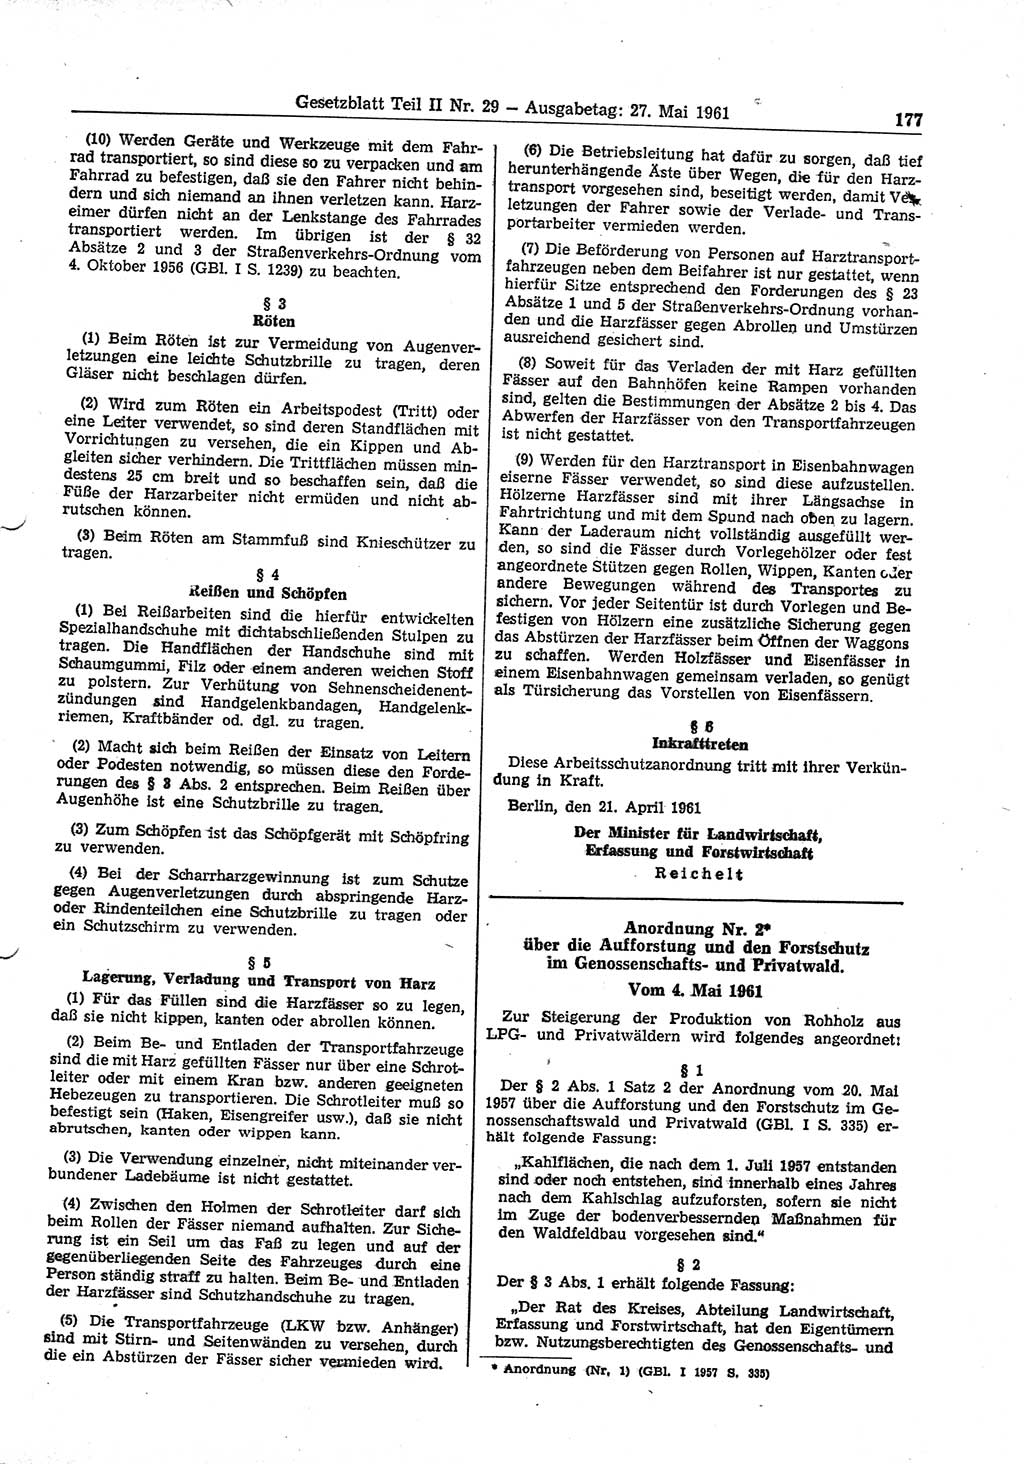 Gesetzblatt (GBl.) der Deutschen Demokratischen Republik (DDR) Teil ⅠⅠ 1961, Seite 177 (GBl. DDR ⅠⅠ 1961, S. 177)